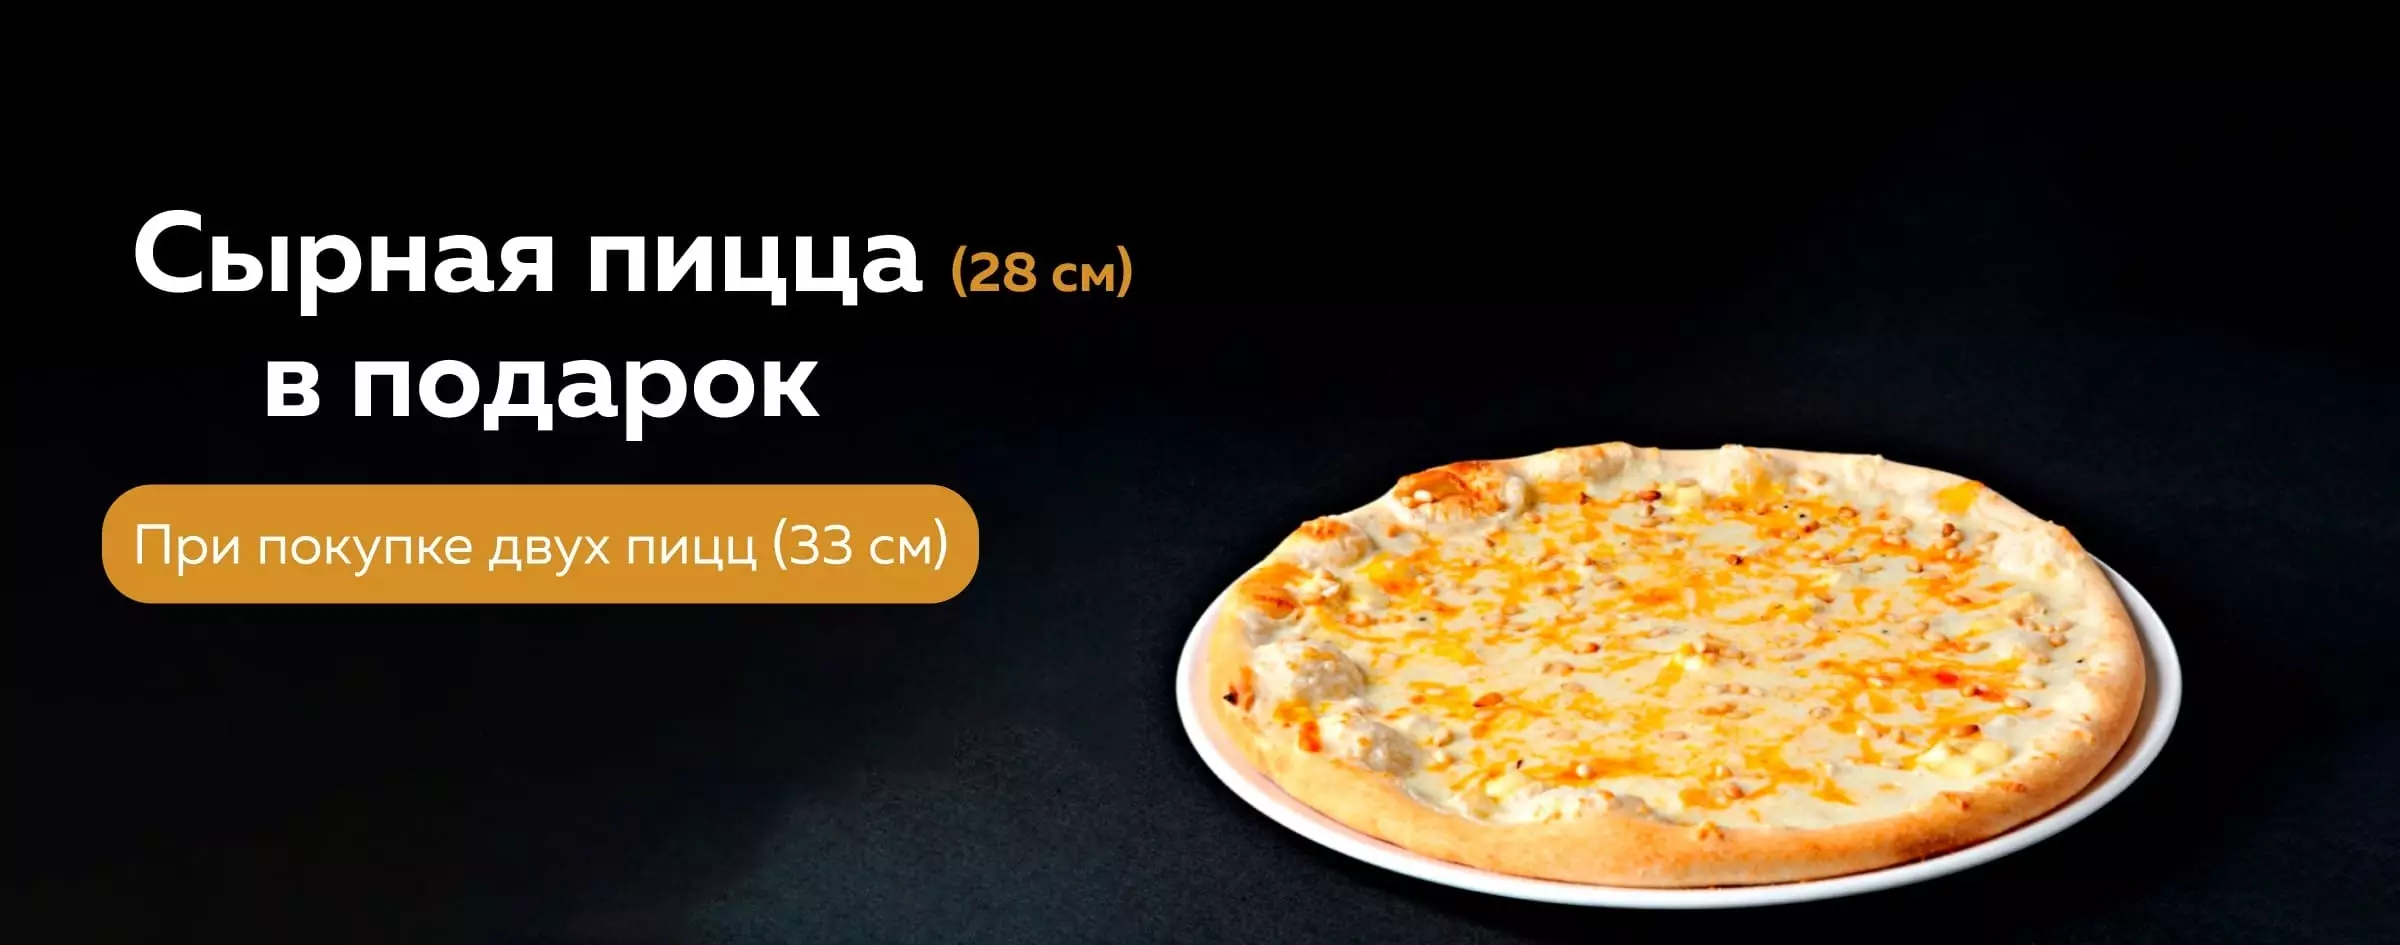 При покупке двух пицц (33 см) в подарок сырная пицца (28 см)